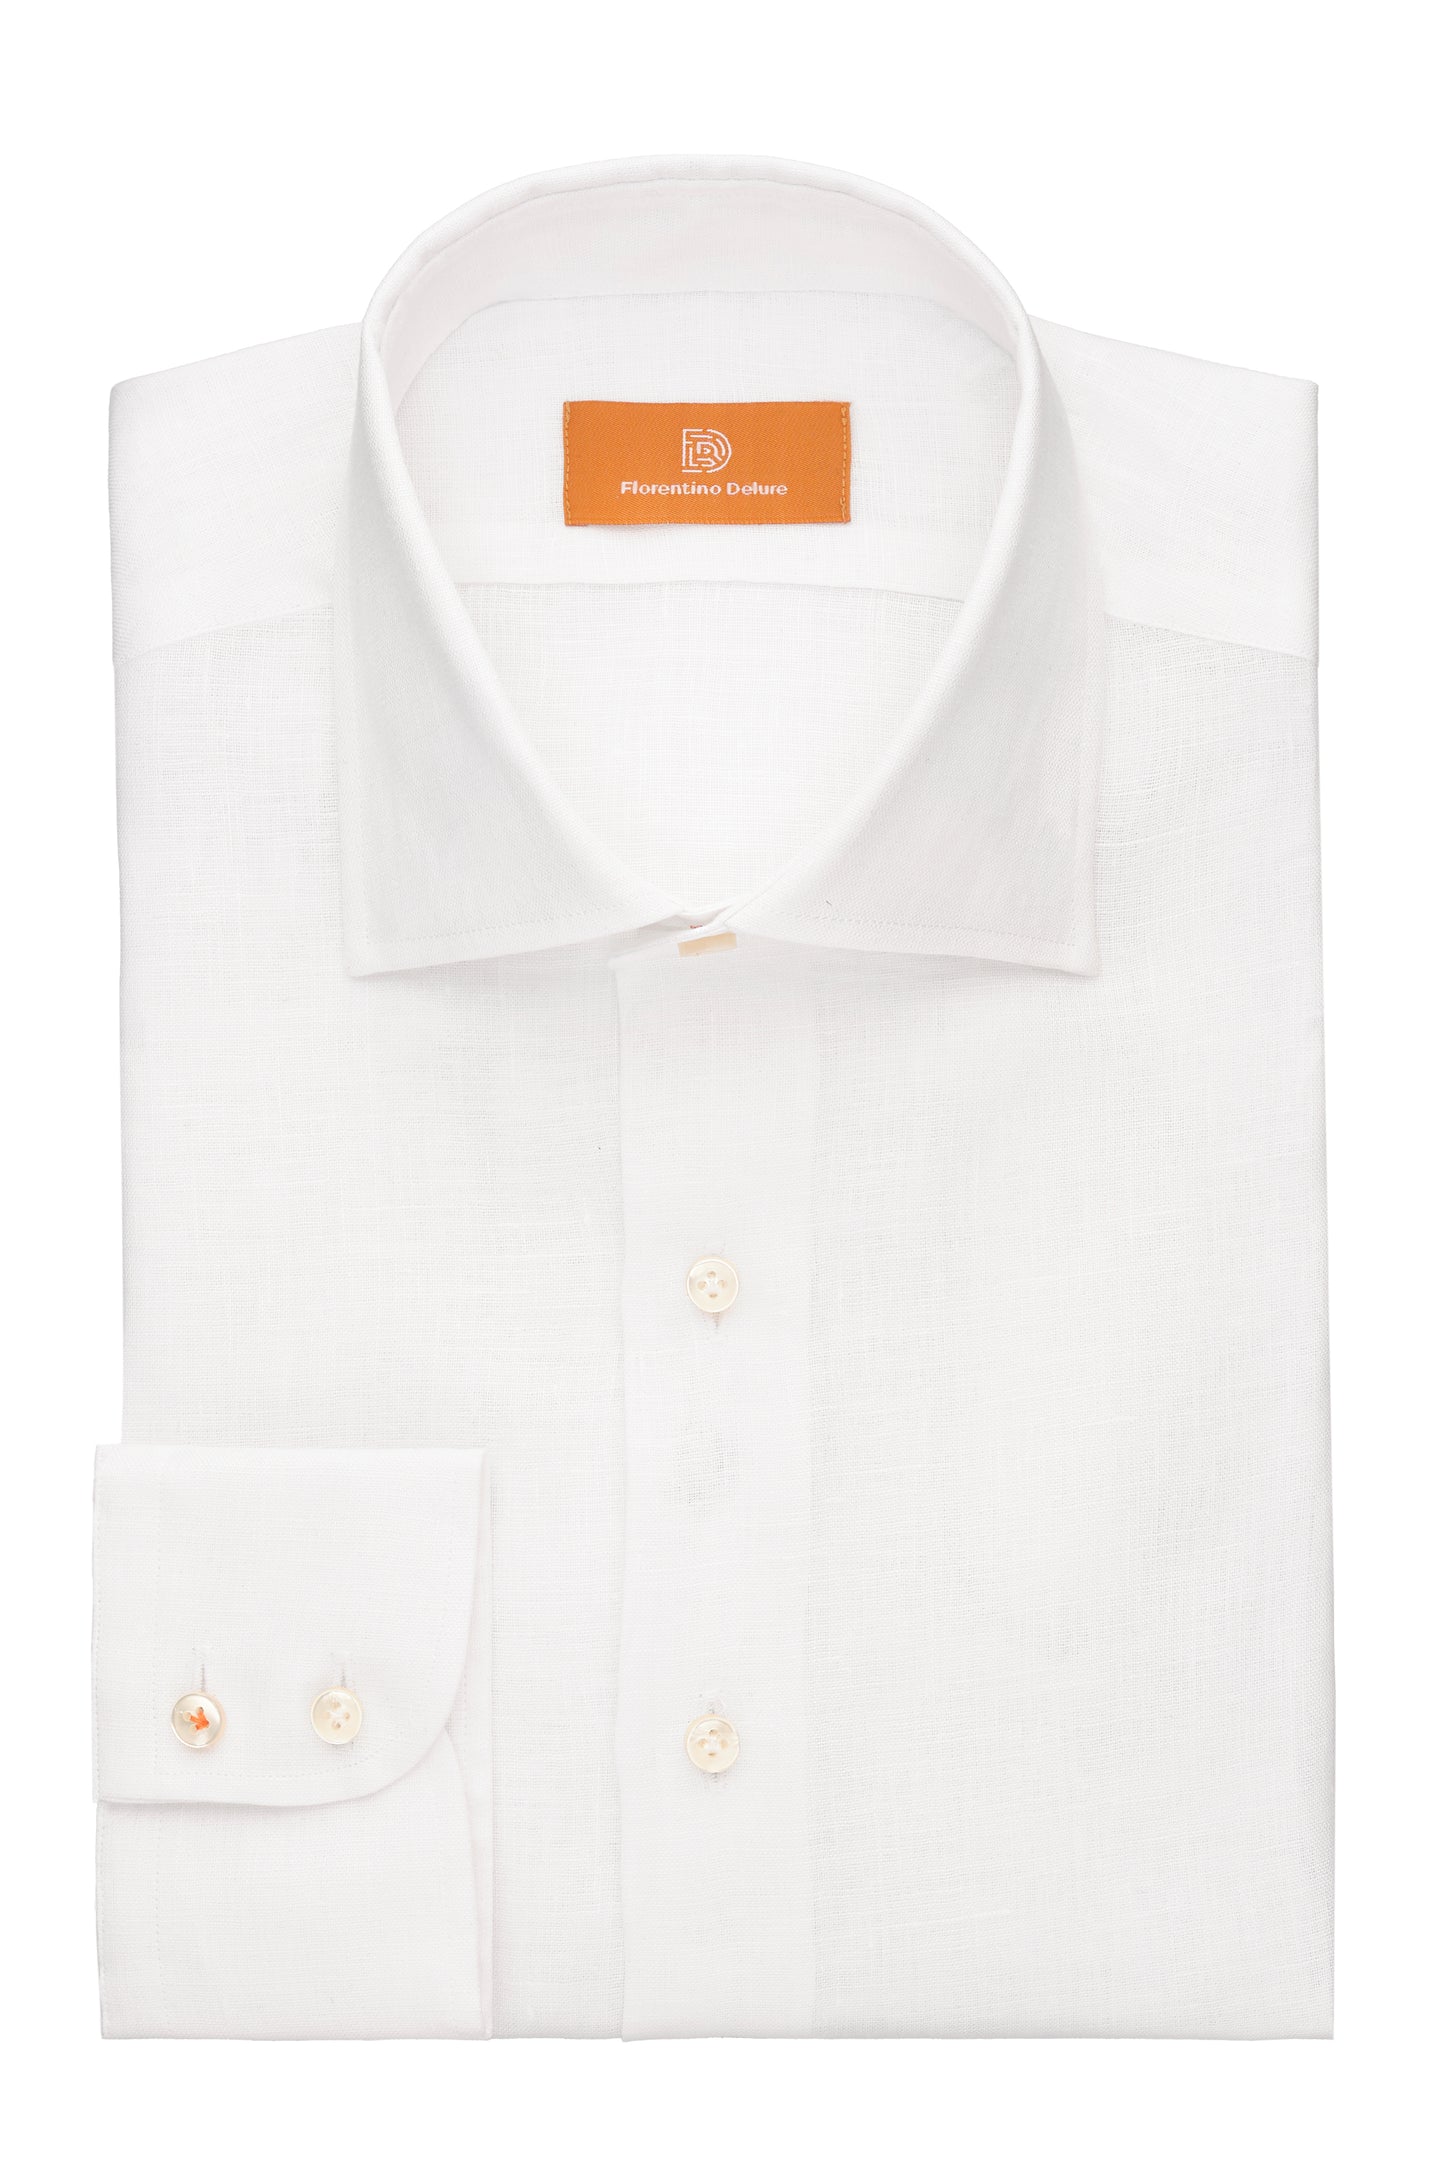 White Linen Shirt Menswear Casual Shirts